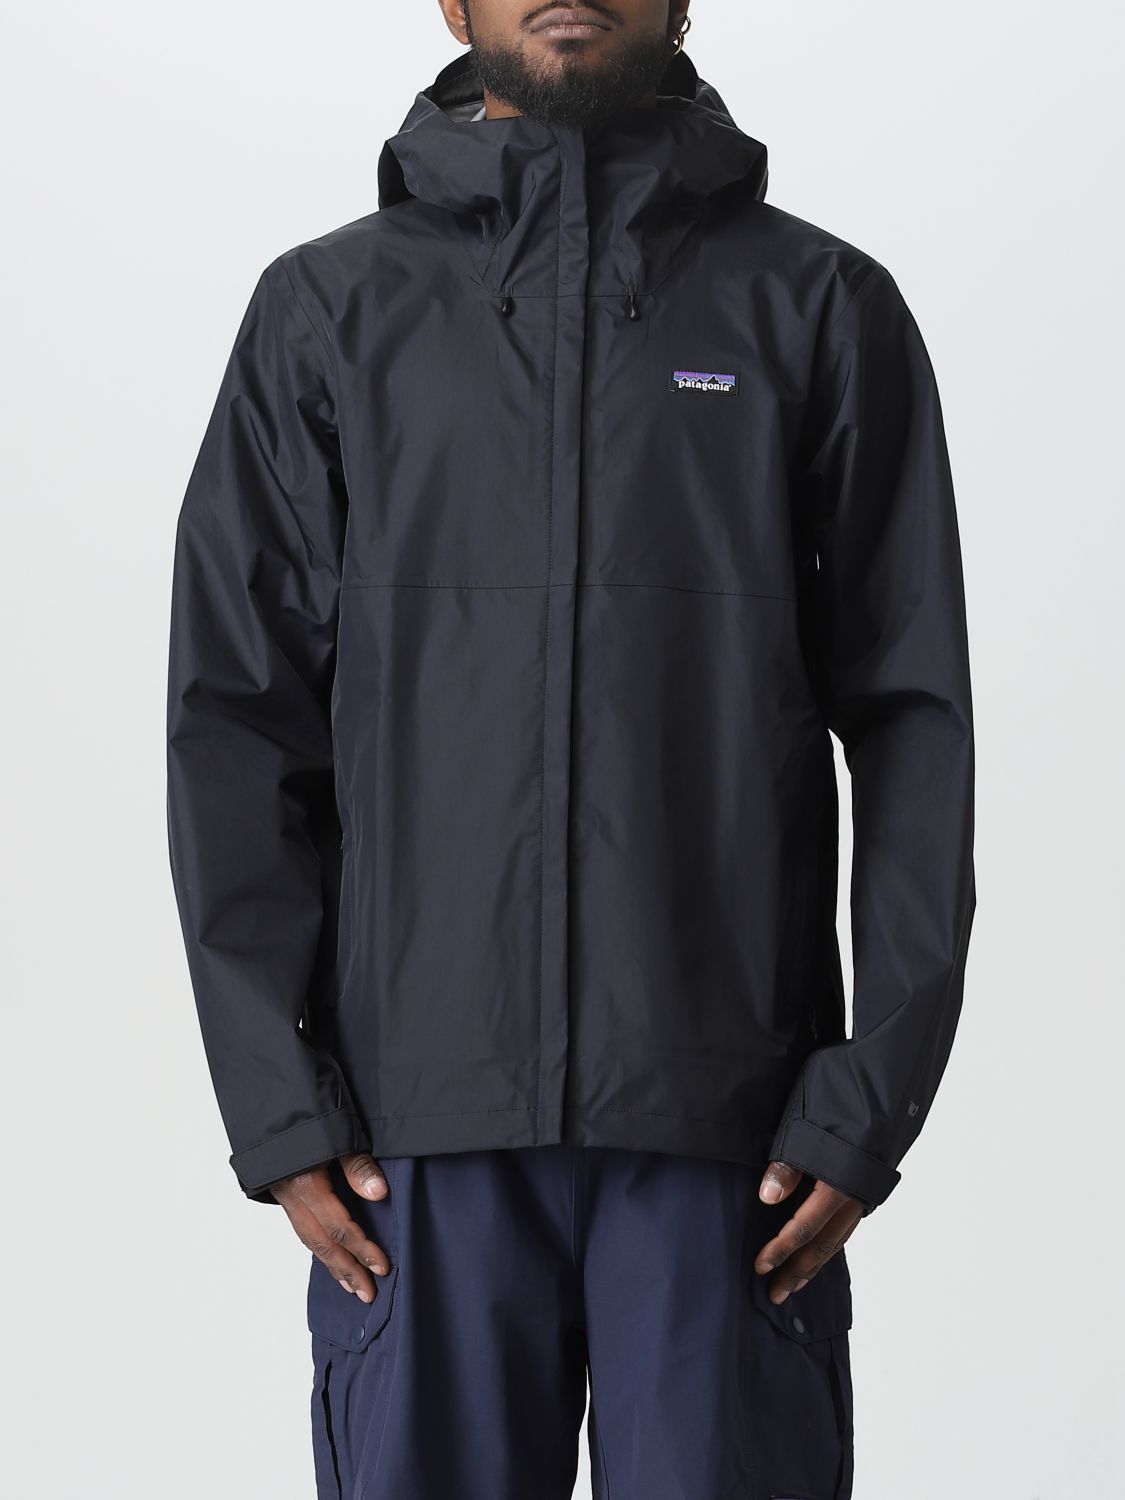 PATAGONIA: jacket for men - Black | Patagonia jacket 85241 online on ...